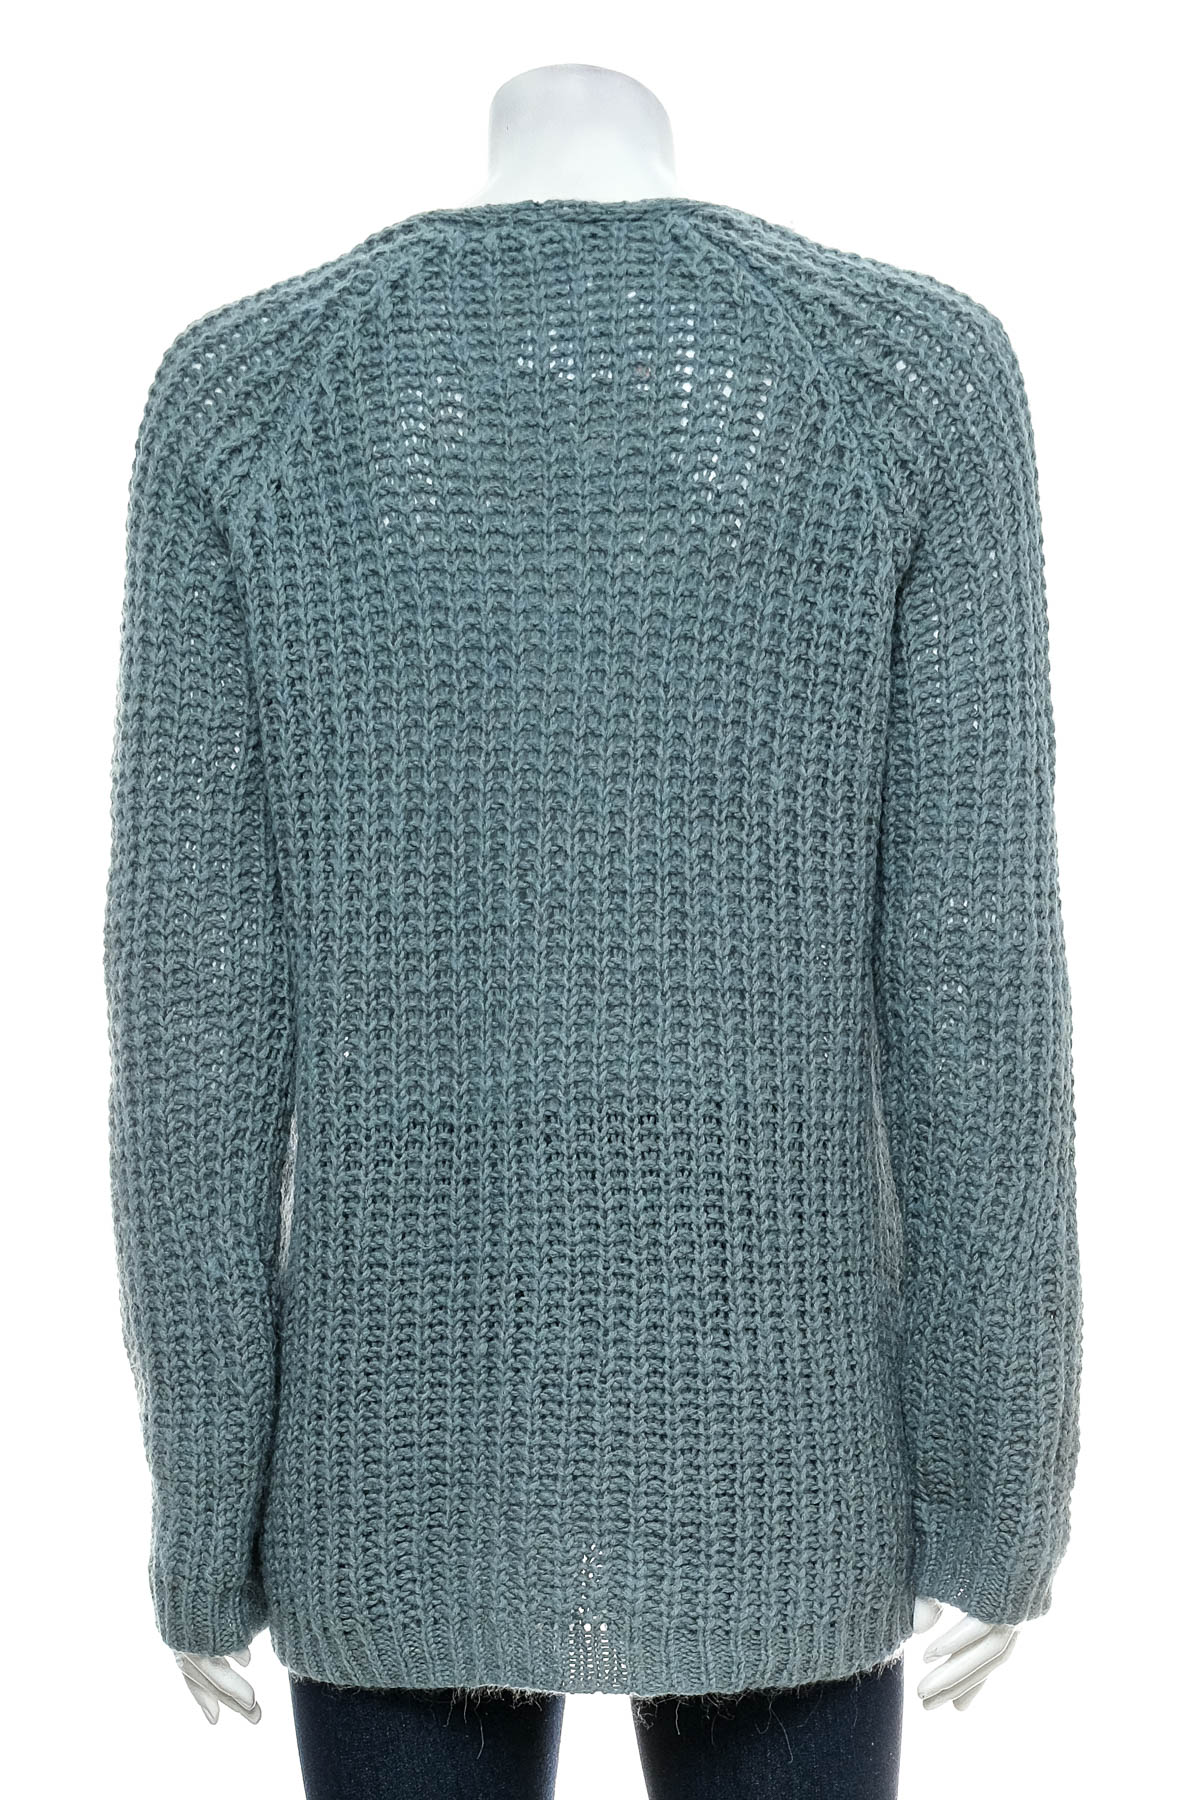 Women's sweater - Deerberg - 1